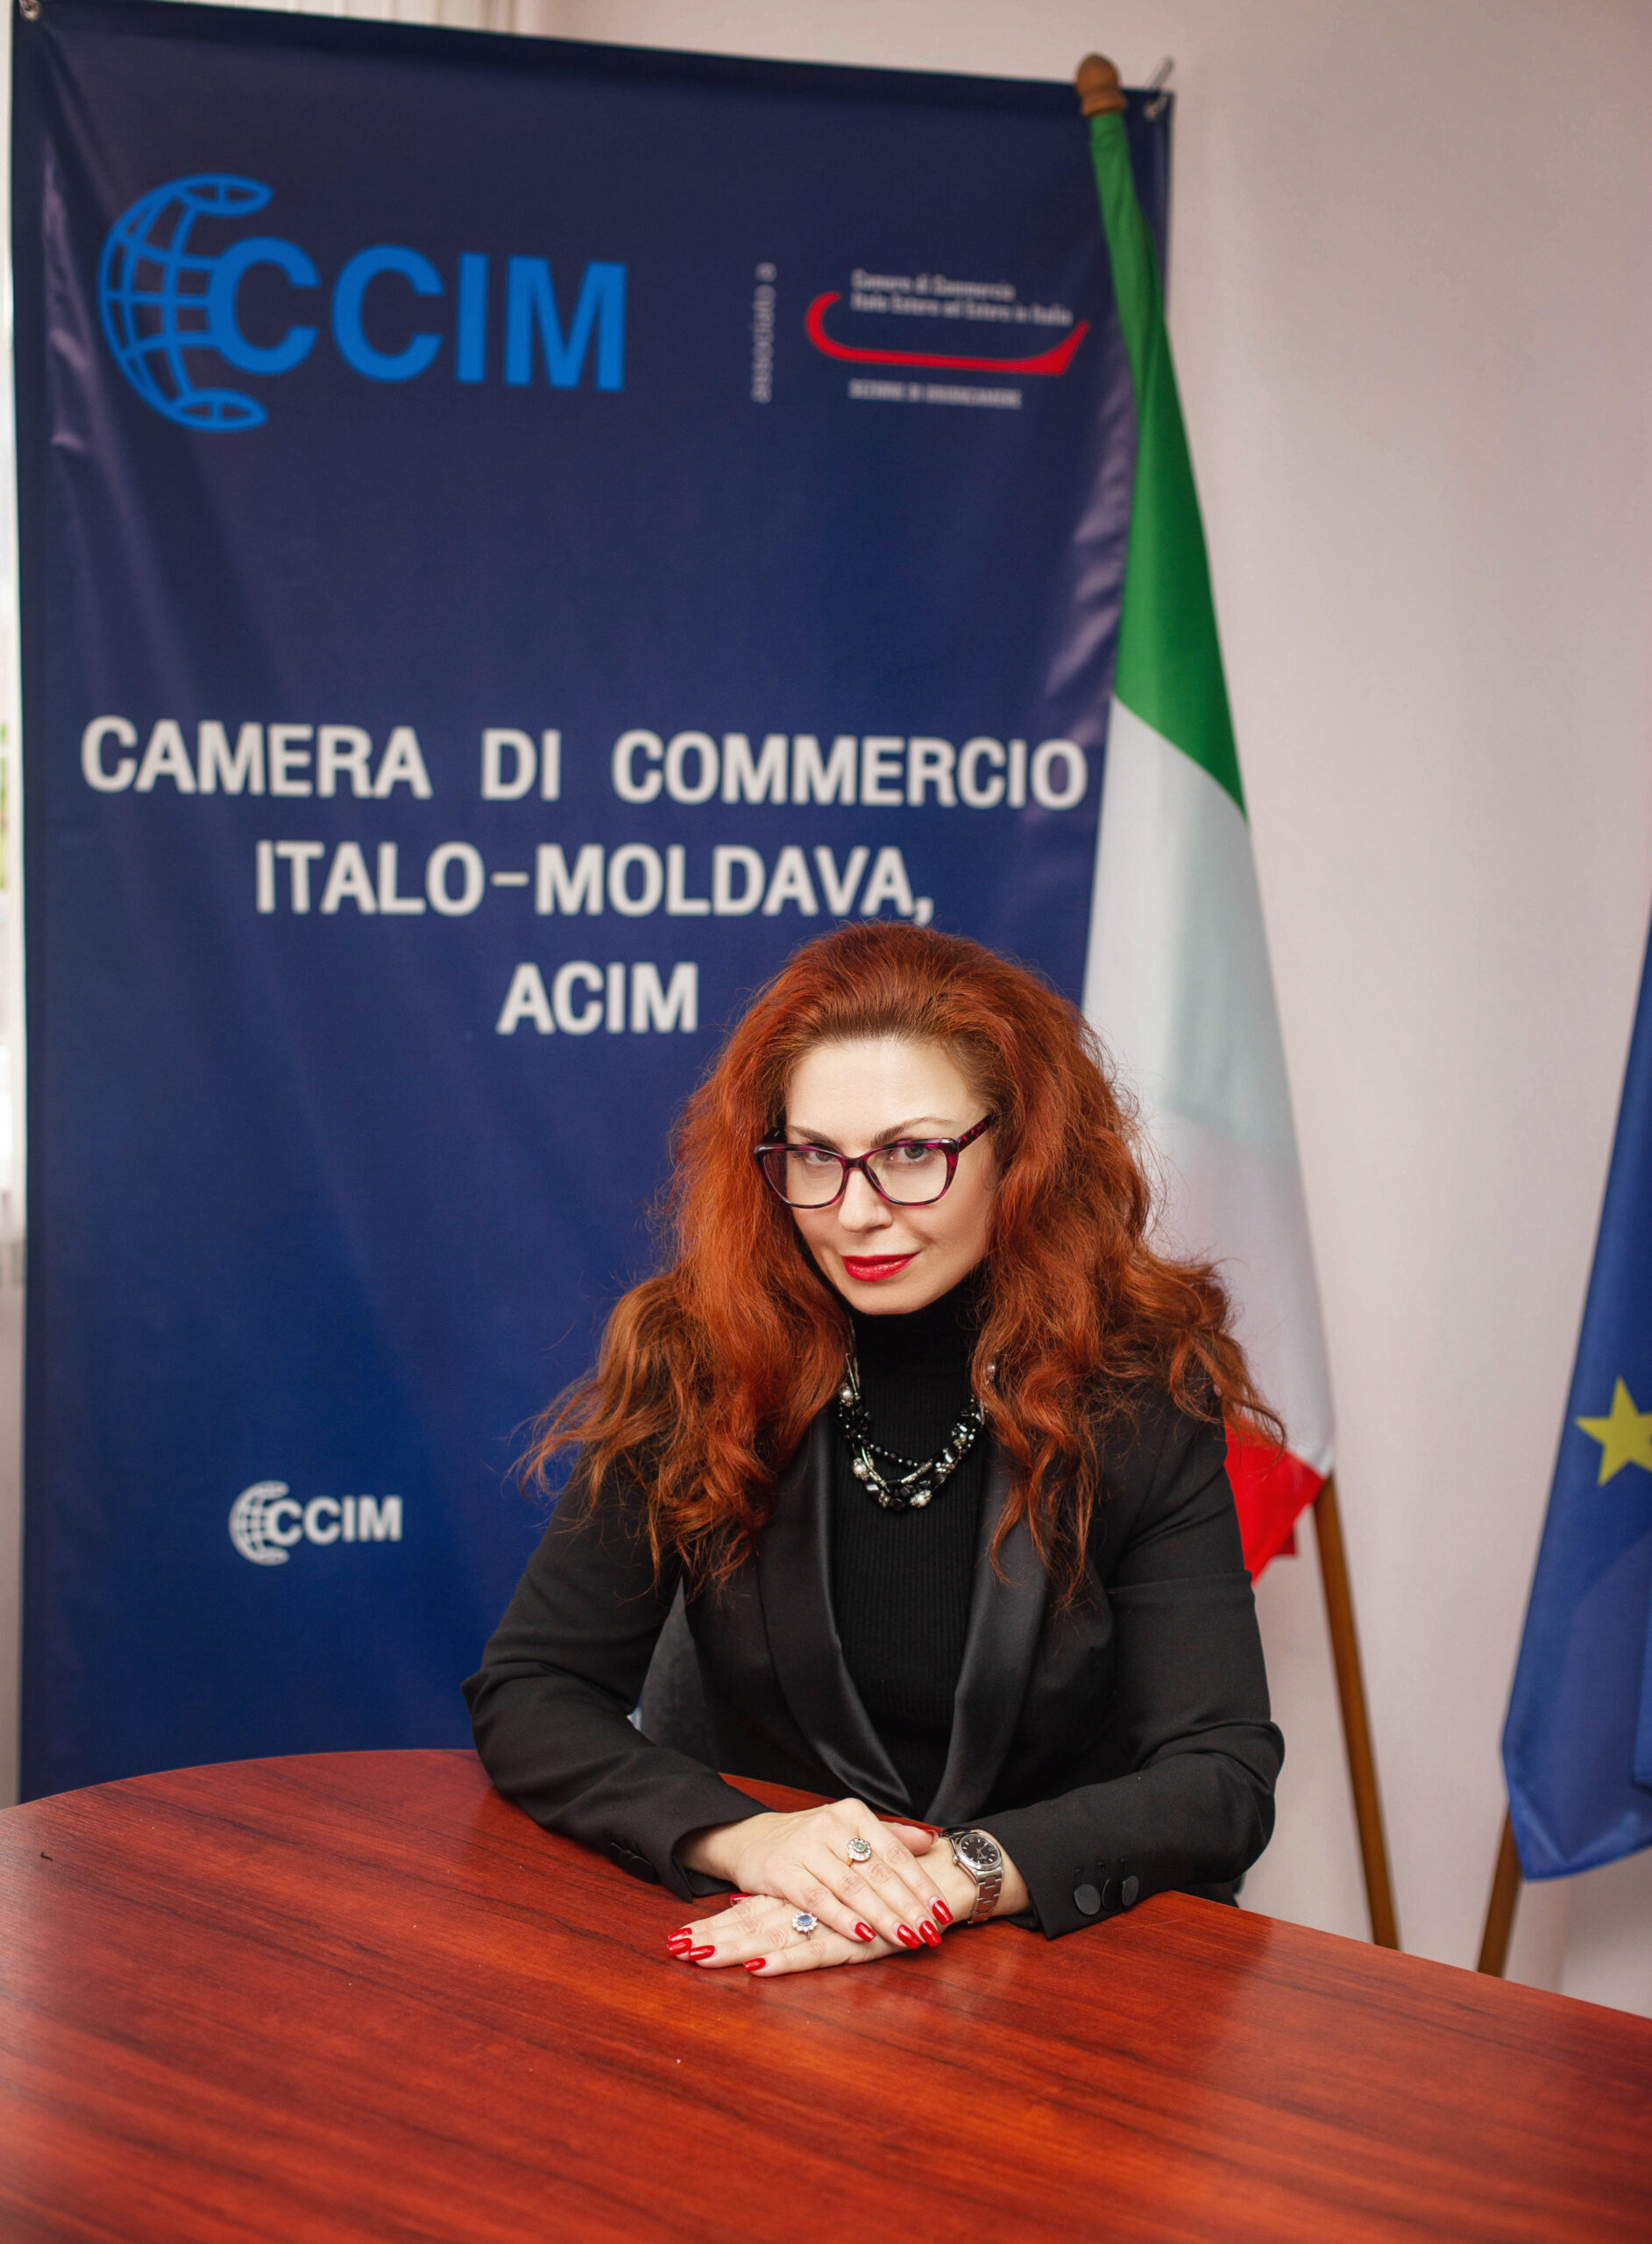 Intervista con Eleonora PRIPA, Segretario Generale della Camera di Commercio Italo-Moldava